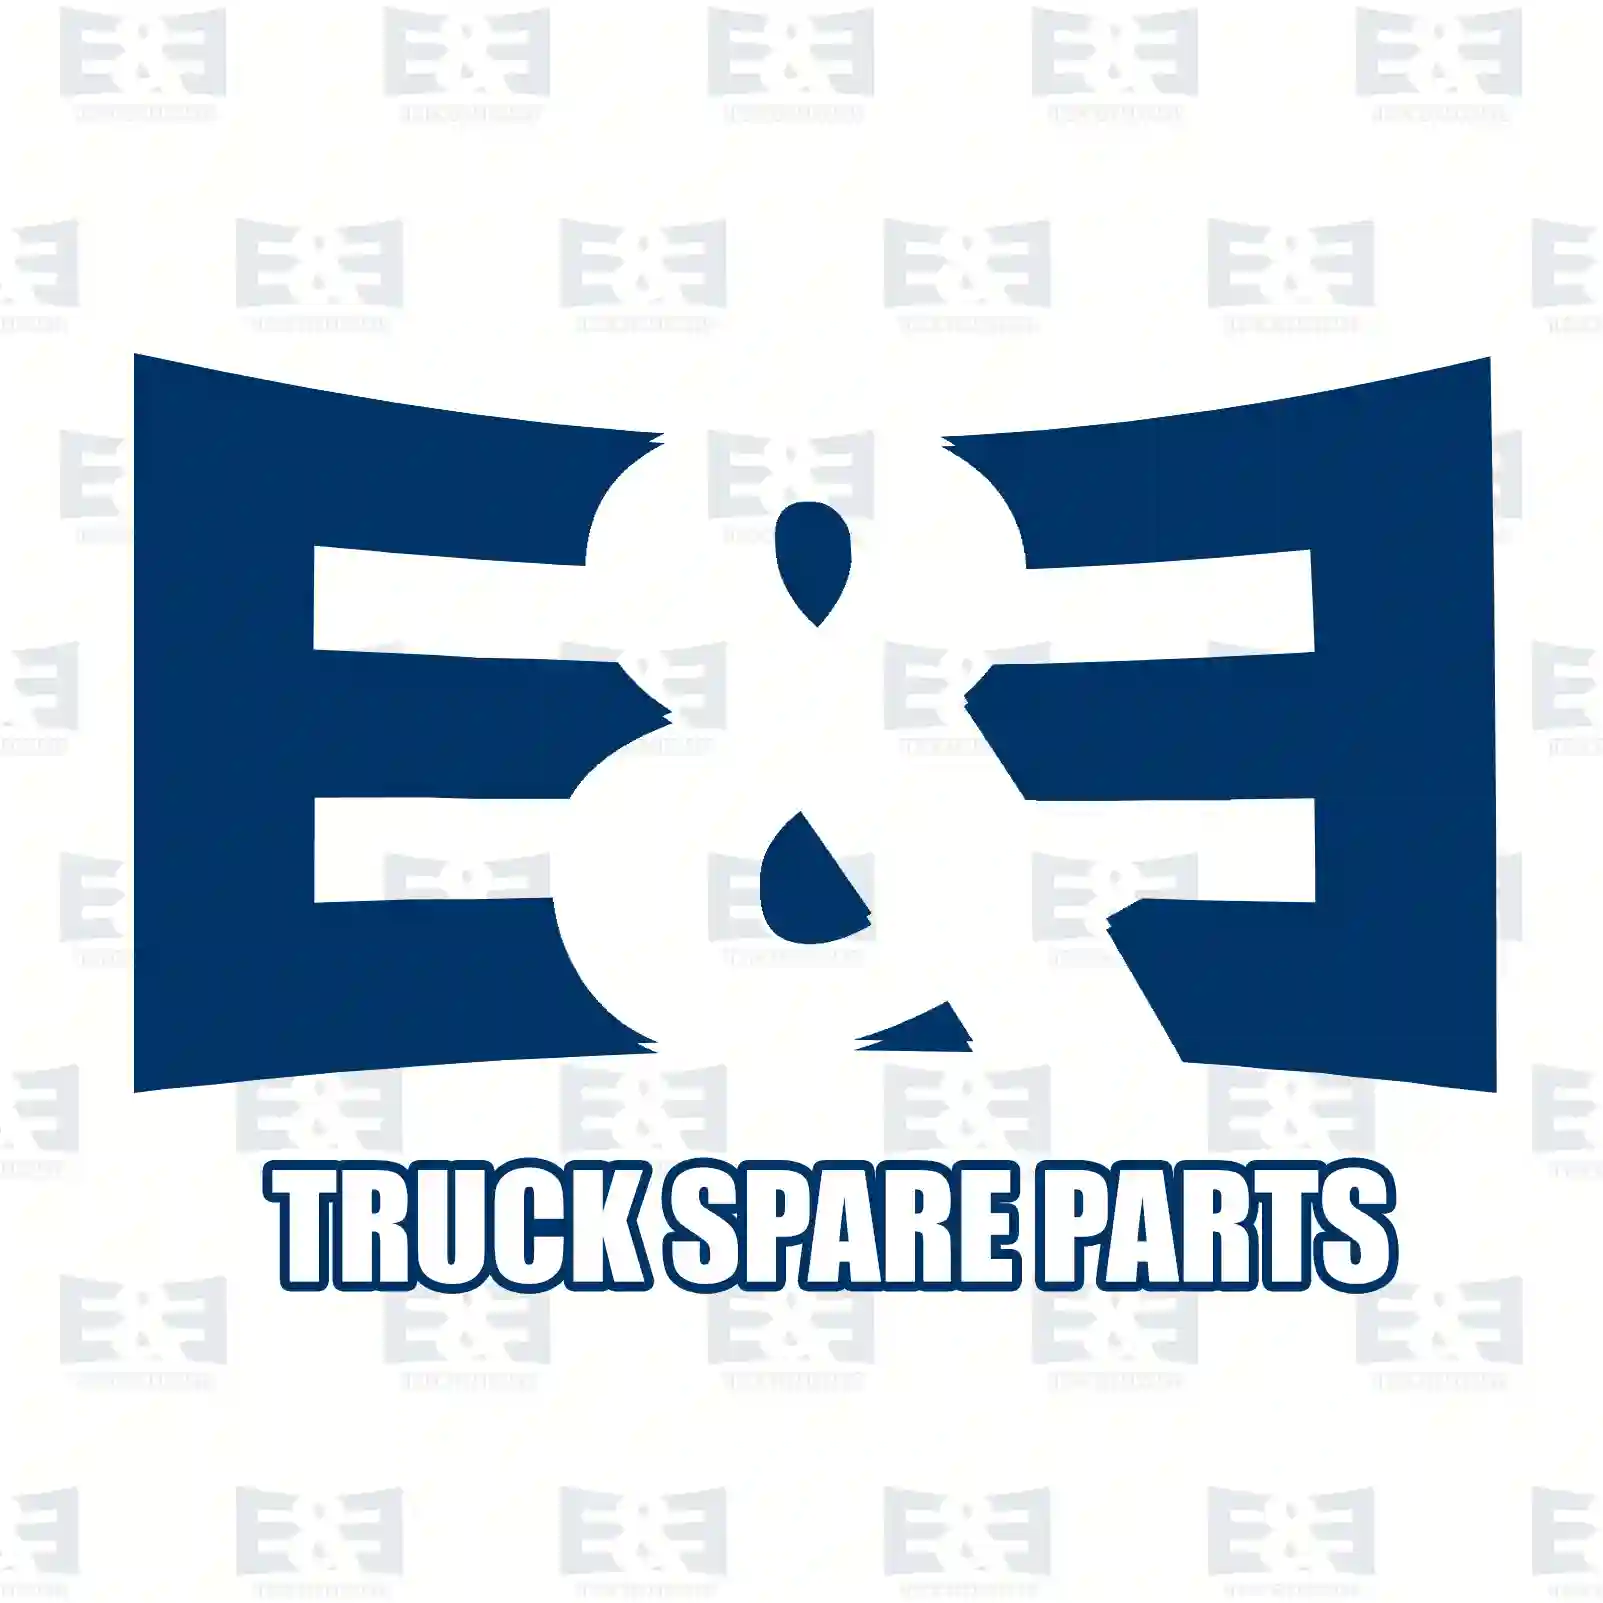 Overhaul kit, 2E2200410, 270780, 275531, 276122 ||  2E2200410 E&E Truck Spare Parts | Truck Spare Parts, Auotomotive Spare Parts Overhaul kit, 2E2200410, 270780, 275531, 276122 ||  2E2200410 E&E Truck Spare Parts | Truck Spare Parts, Auotomotive Spare Parts